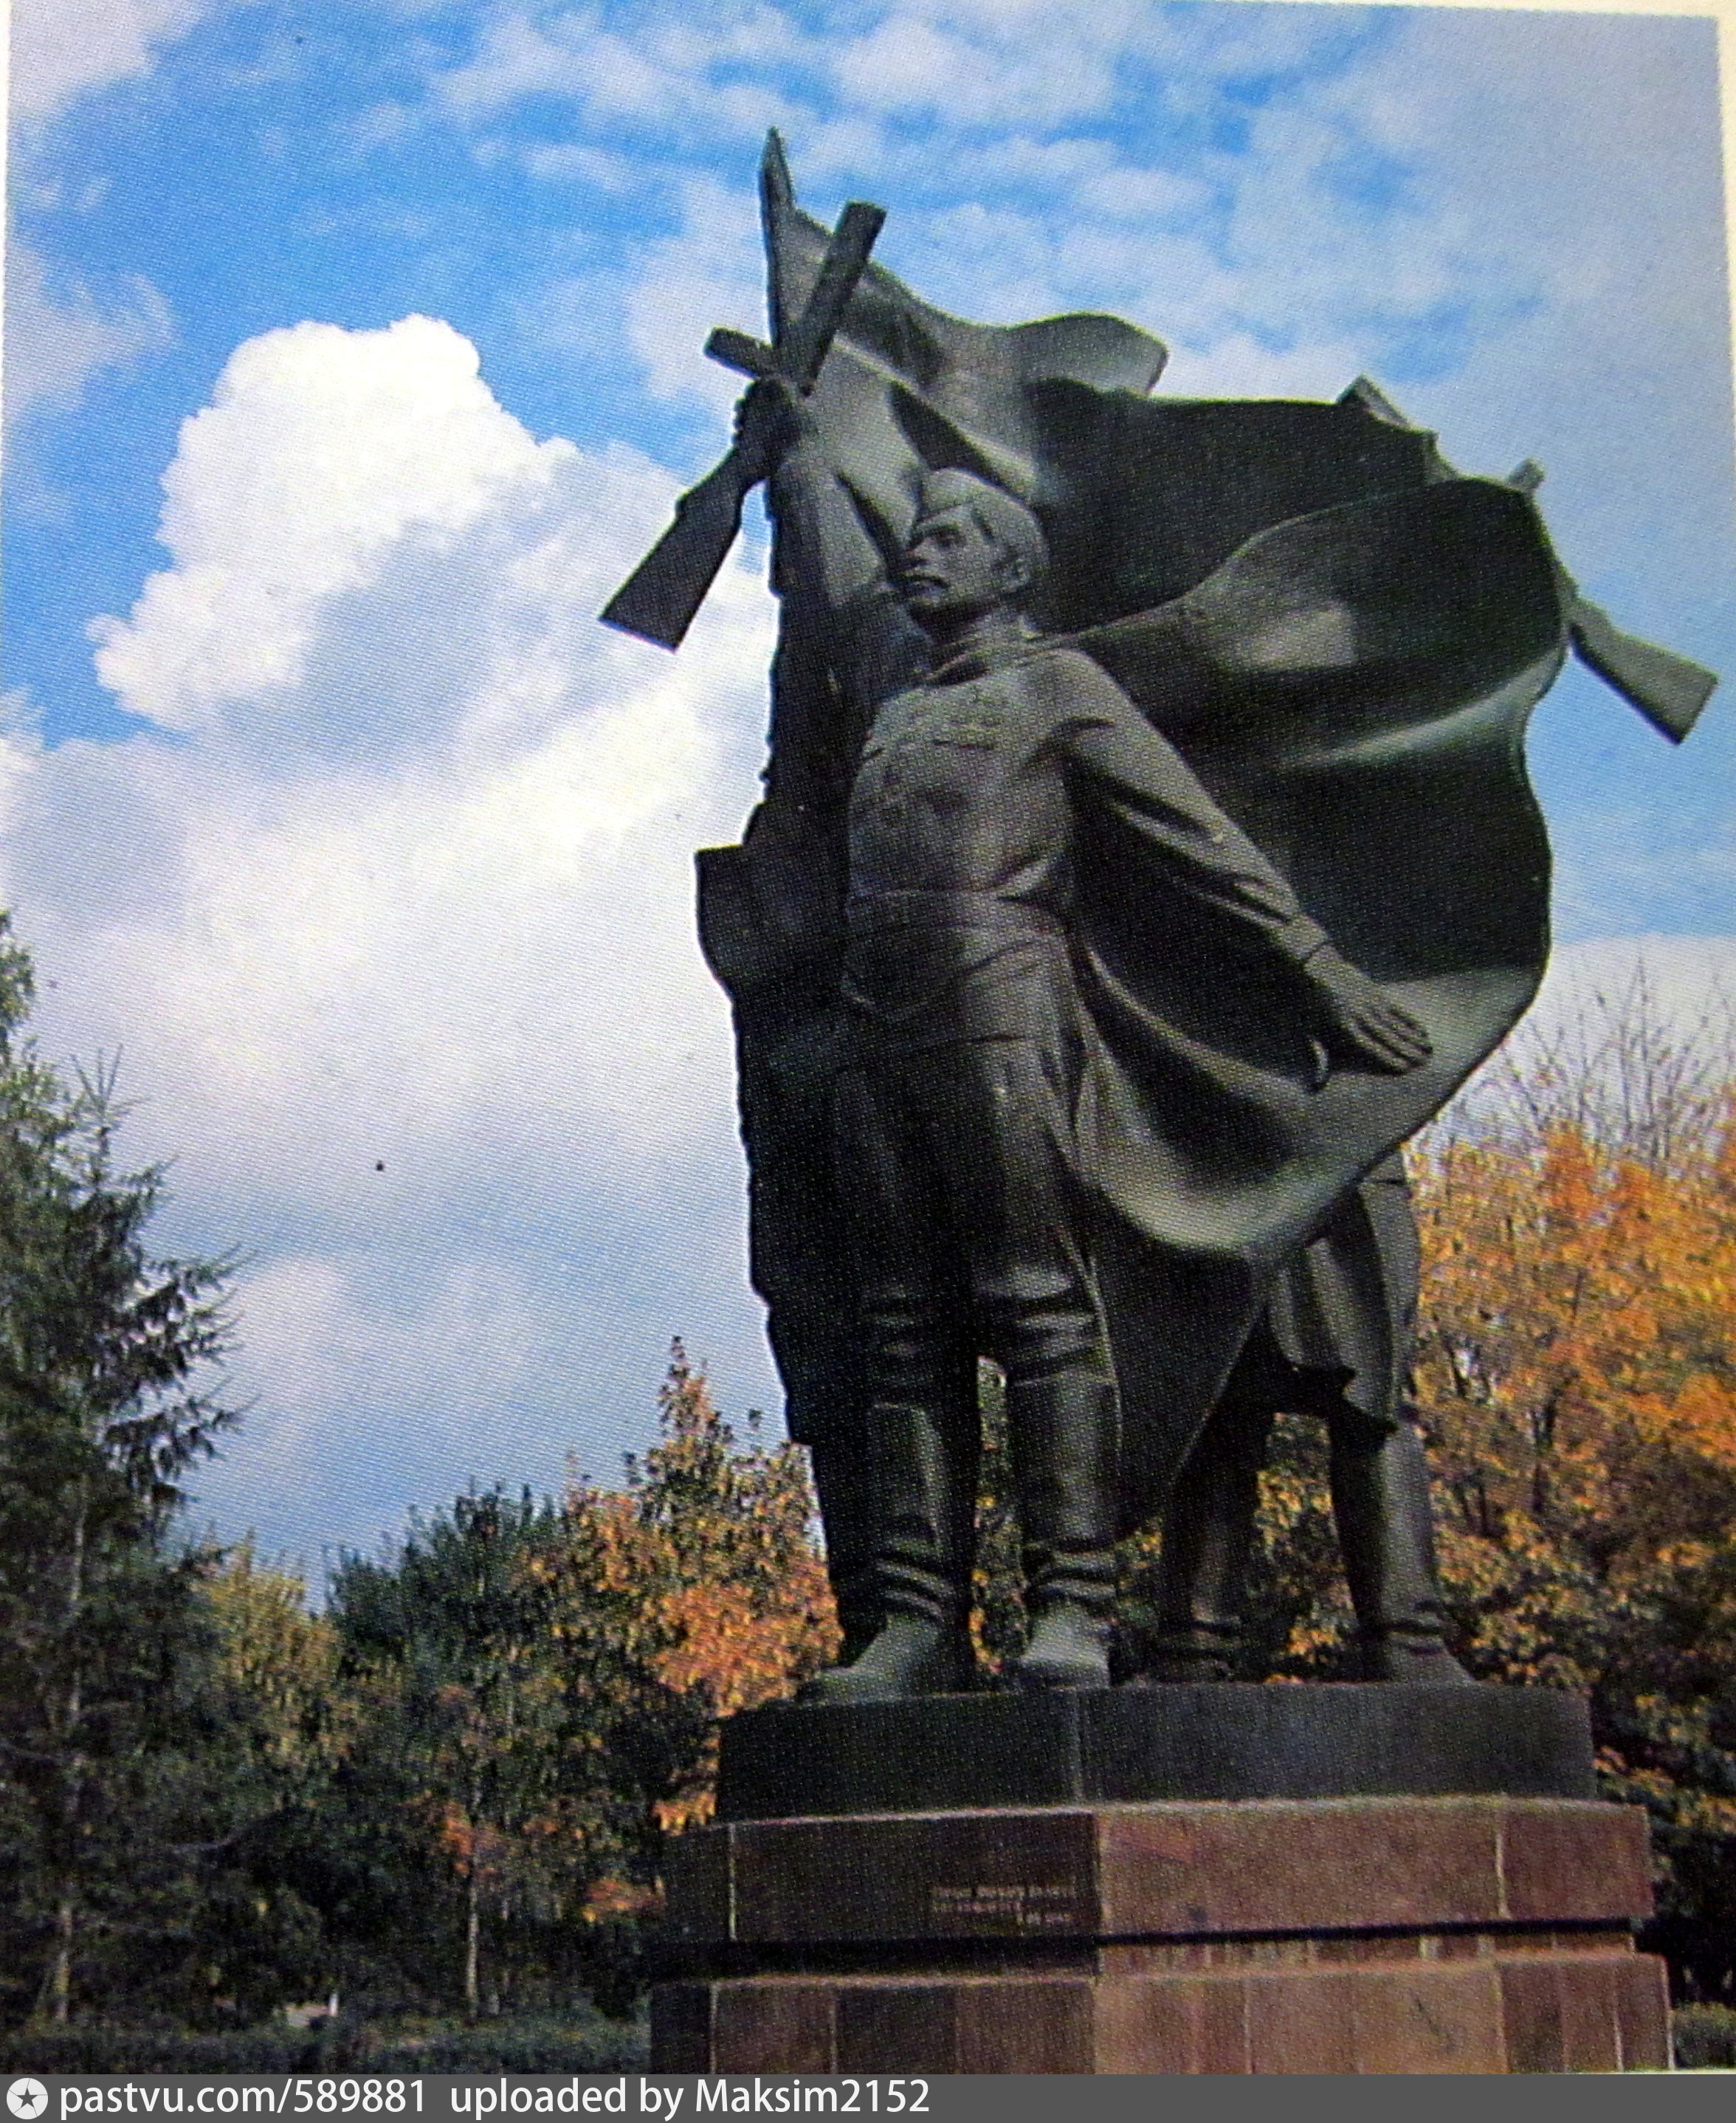 памятники в москве о войне